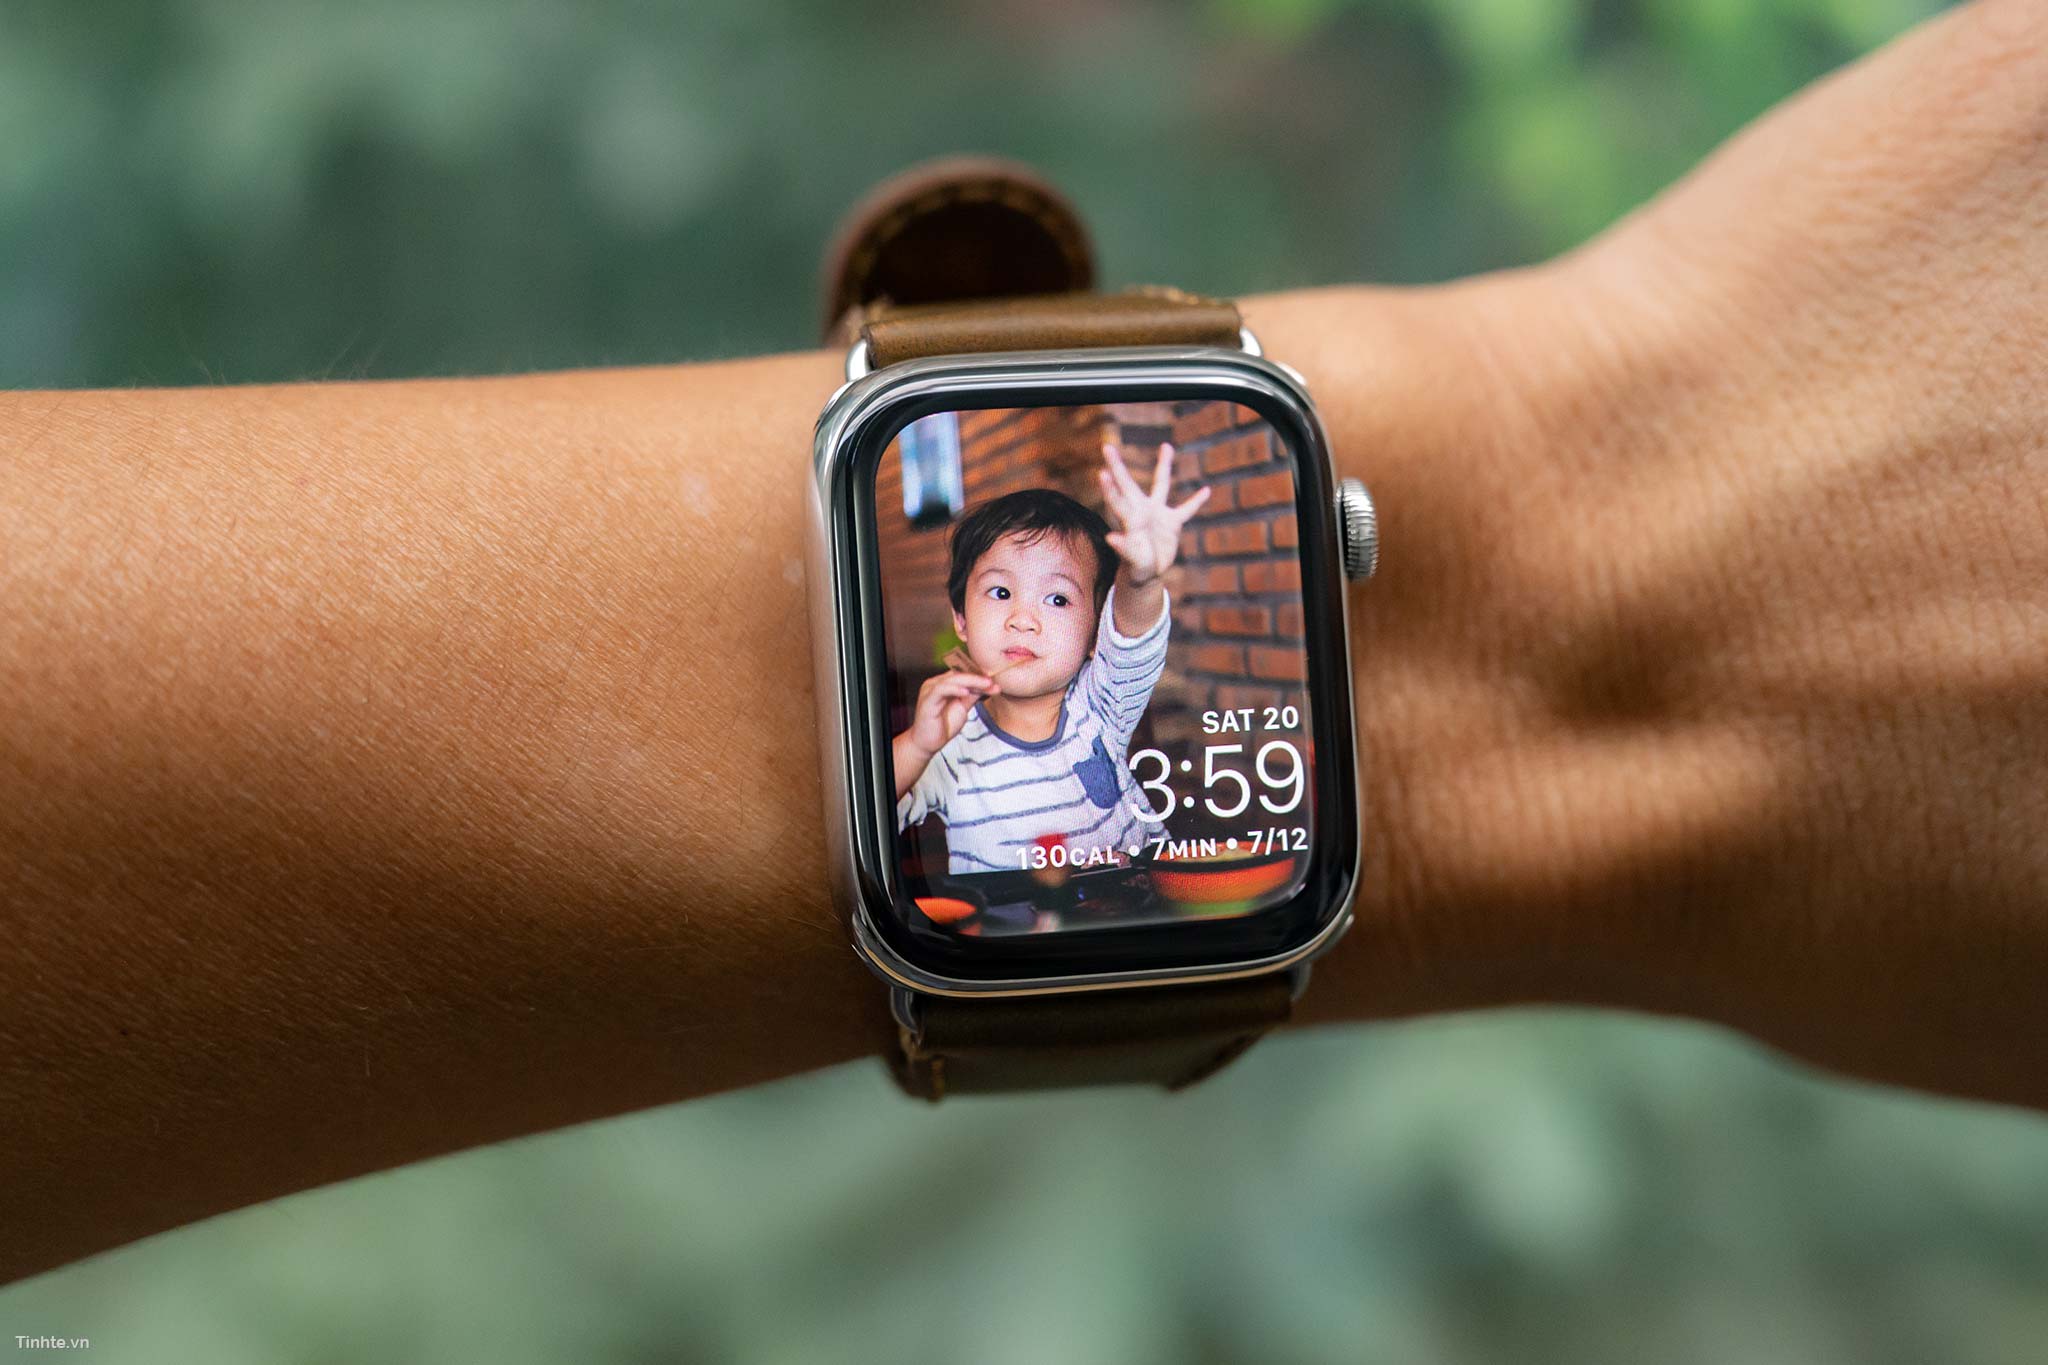 Hình nền đẹp apple watch: Sở hữu bộ sưu tập những hình nền đẹp cho chiếc Apple Watch của bạn cũng giống như sở hữu những tác phẩm nghệ thuật mini trên tay. Hãy xem hình ảnh để chọn lựa hình nền phù hợp với phong cách và sở thích của bạn.